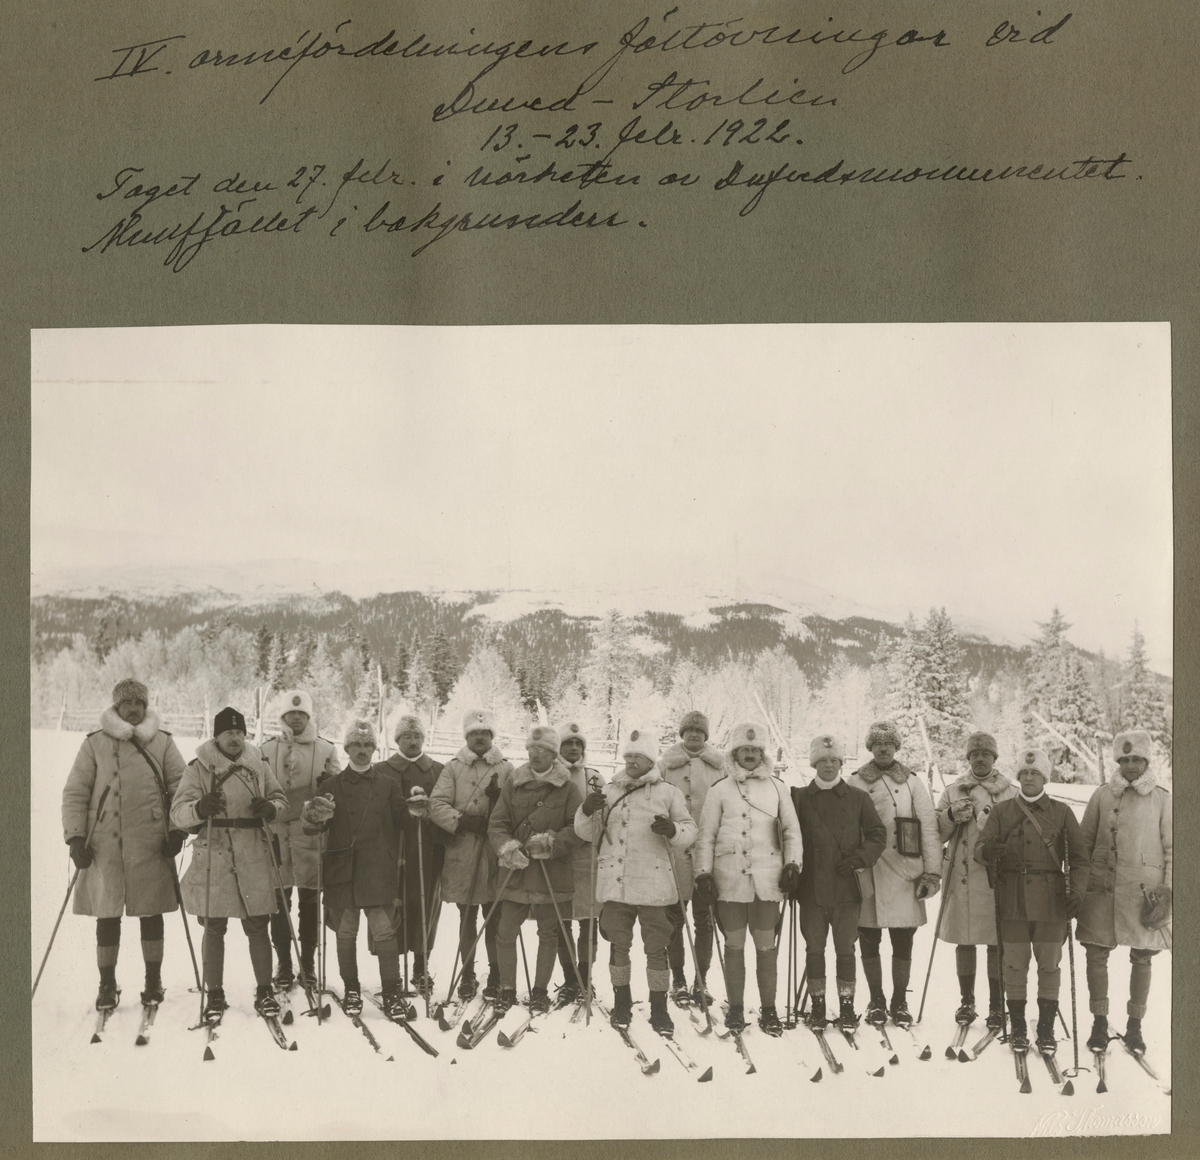 Text i fotoalbum: "IV. arméfördelningens fältövningar vid Duved-Storlien 12.-23. Feb. 1922. Taget den 27. Febr. i närheten av Dufvedsmonumentet. Slagfältet i bakgrunden".